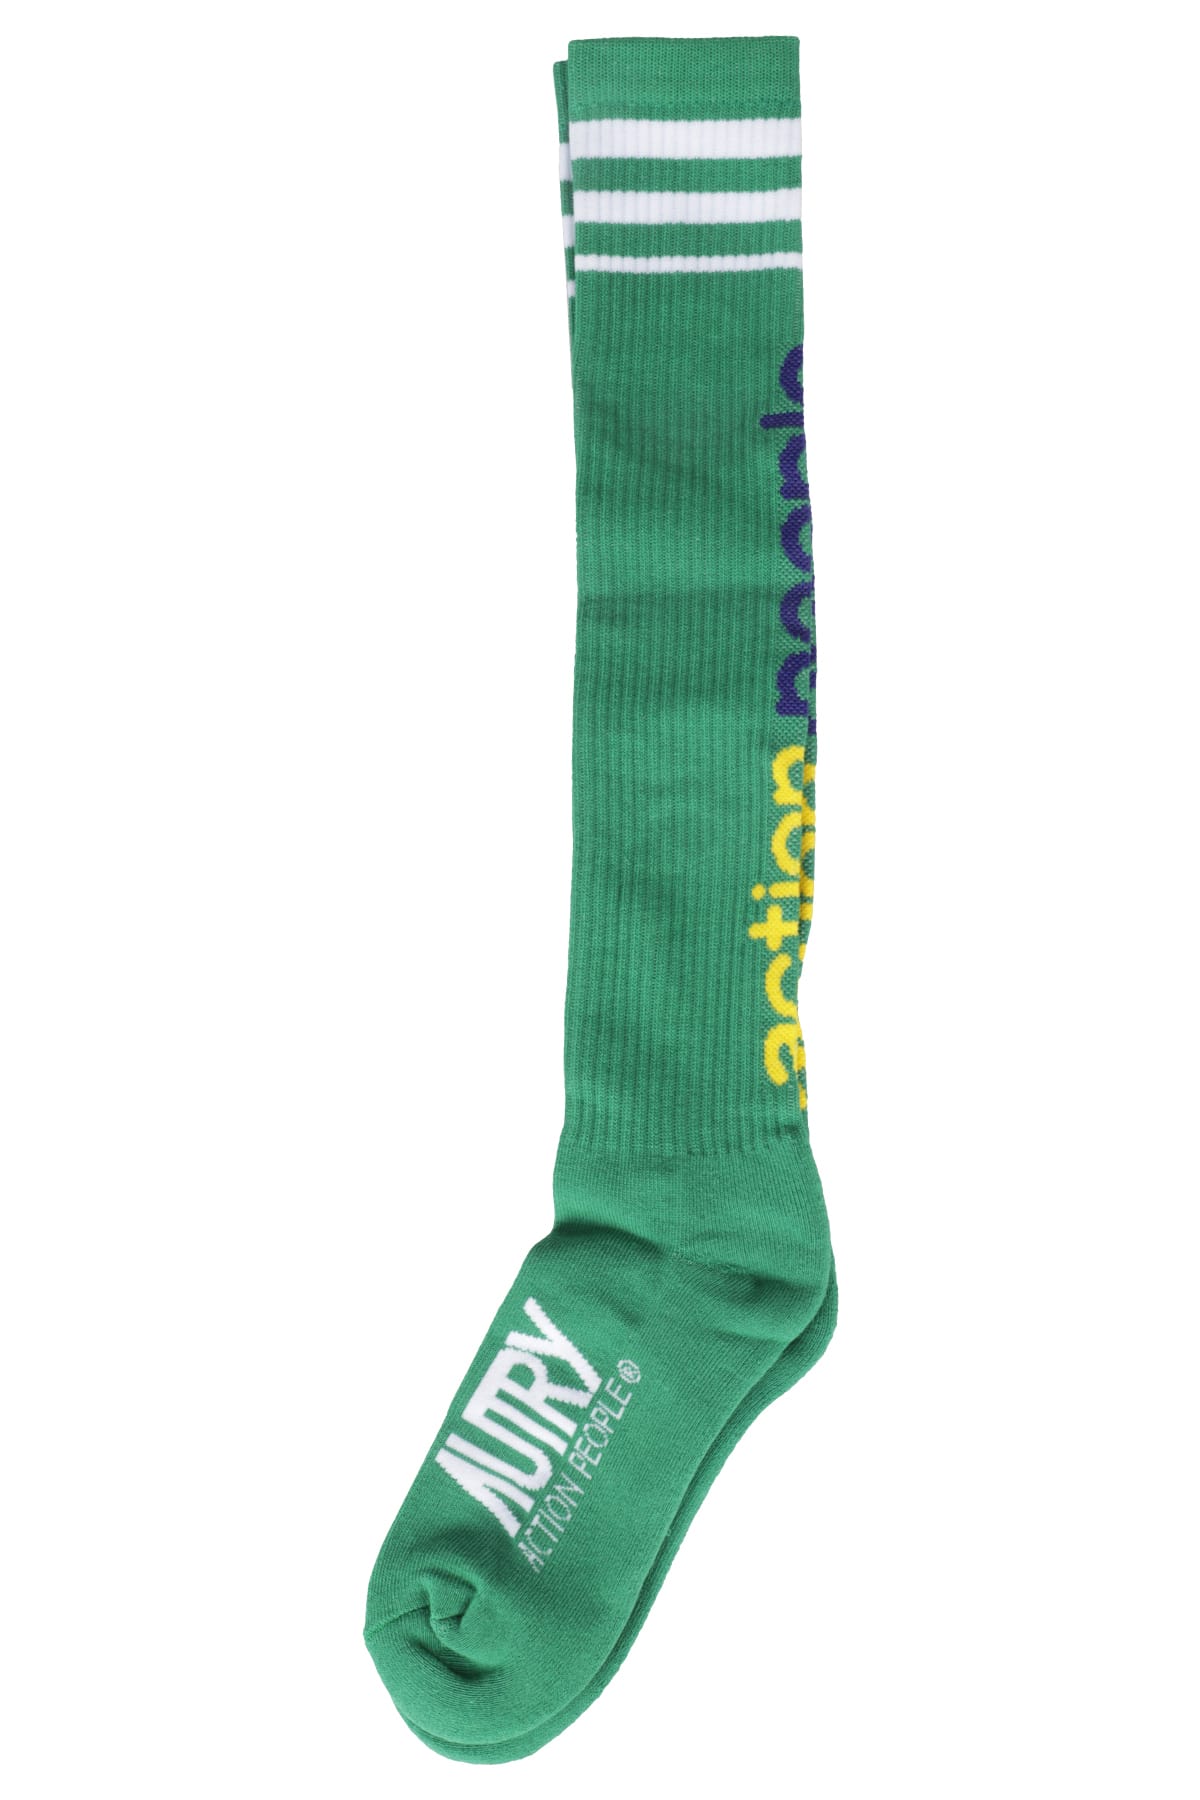 Socks Aerobic Unisex